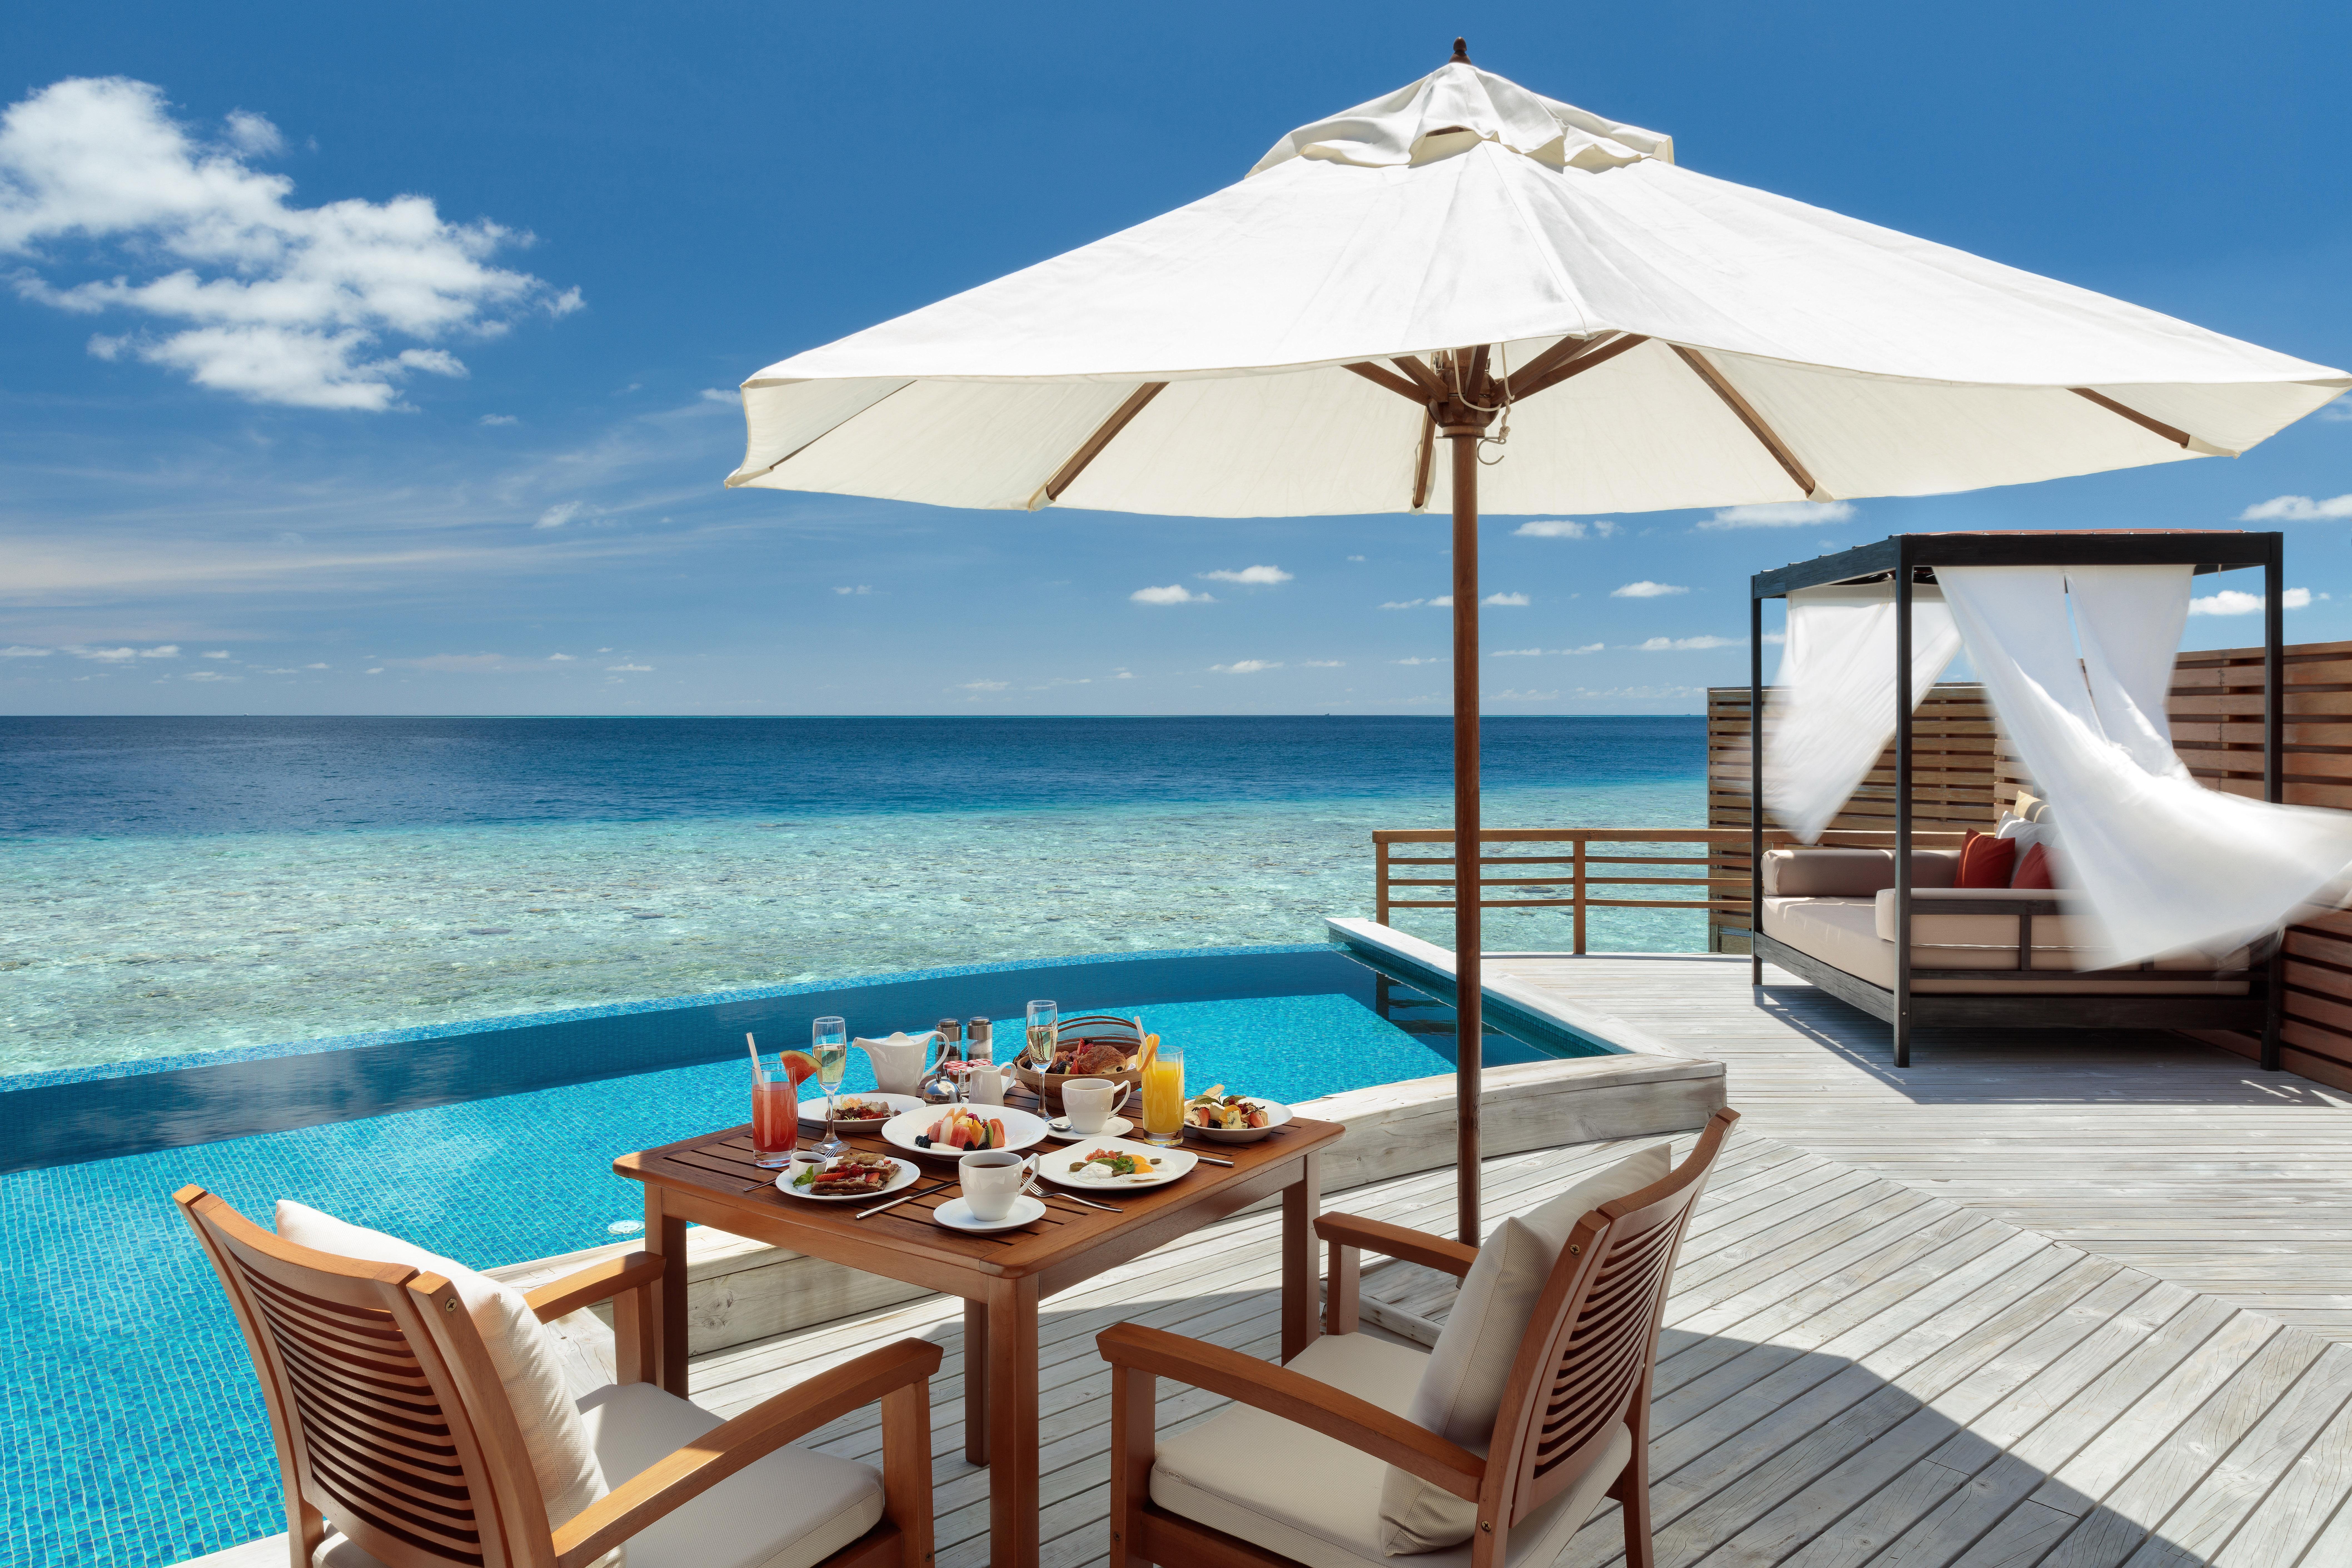 فنادق جزر المالديف   فنادق المالديف   افخم فنادق المالديف   جزر المالديف  المالديف   مالديف